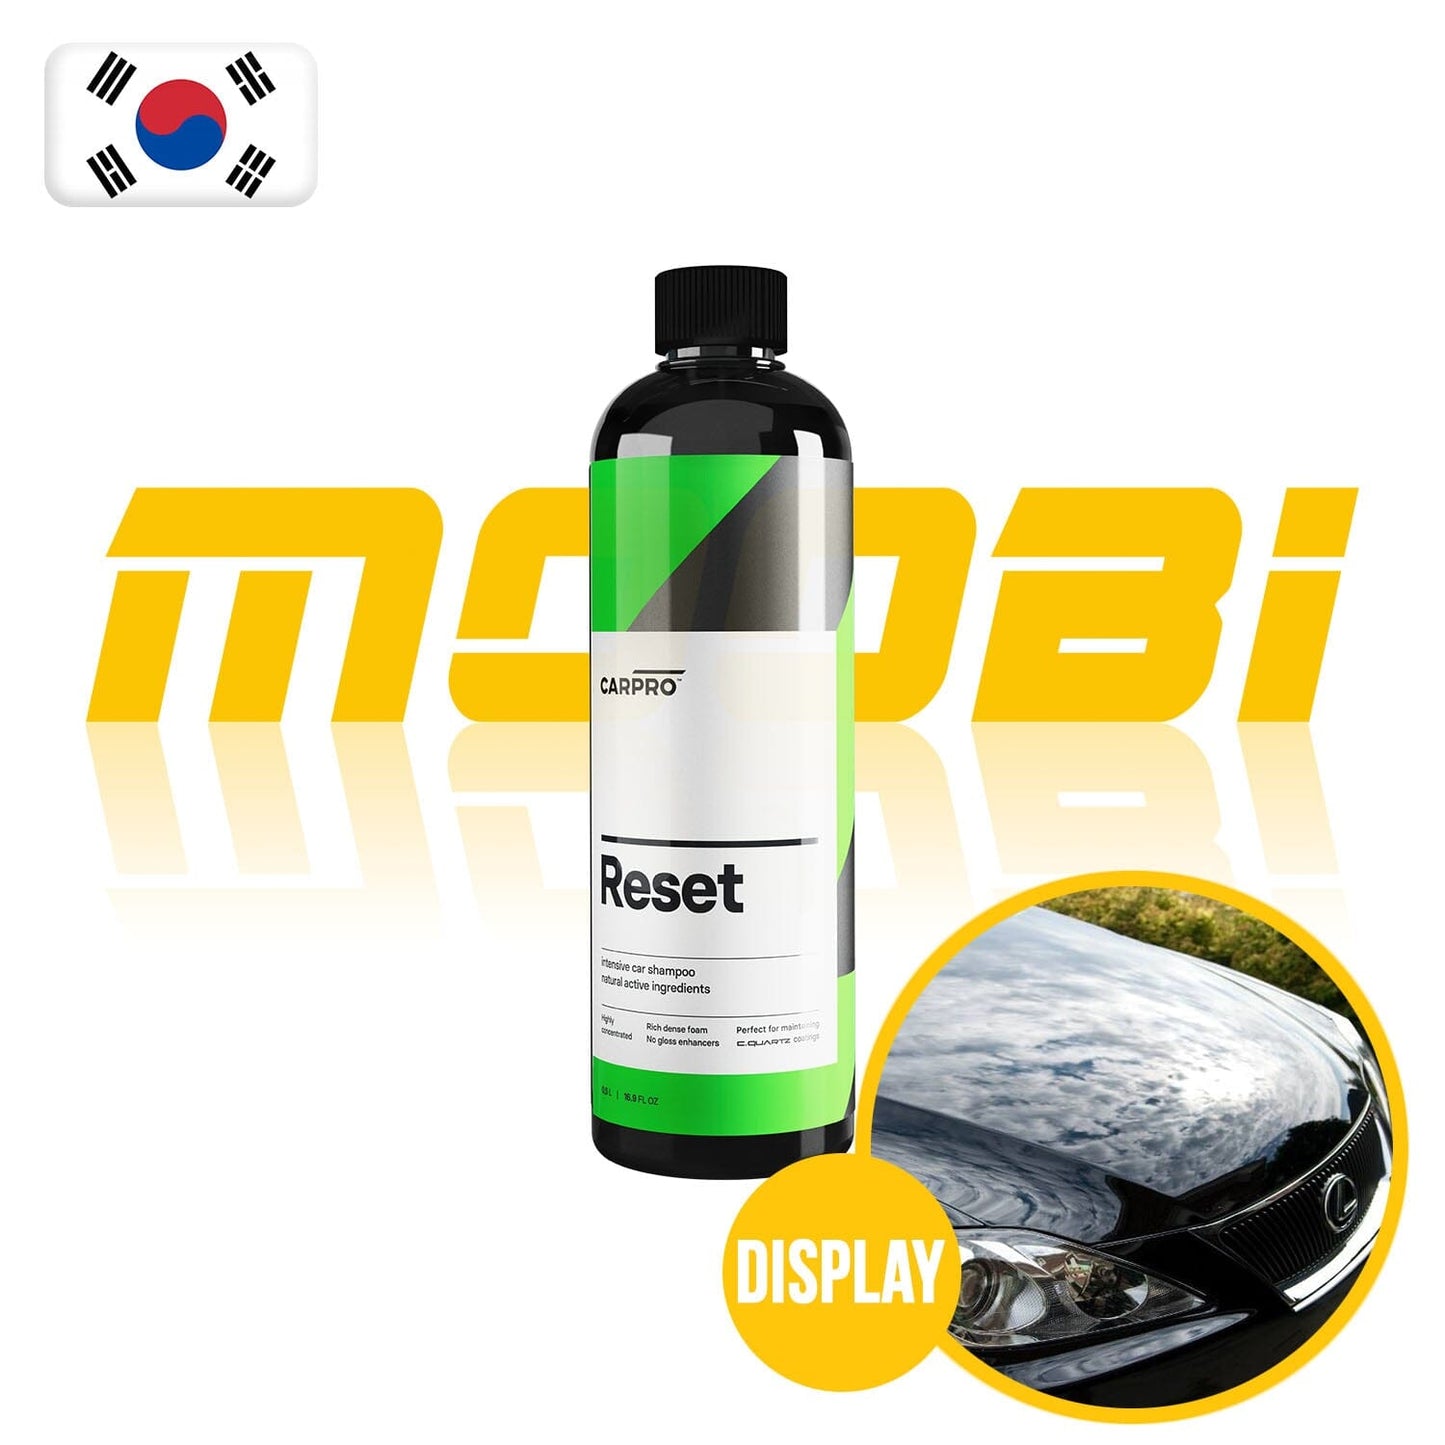 CARPRO, 鍍膜洗車液CarPro RESET, 韓國製